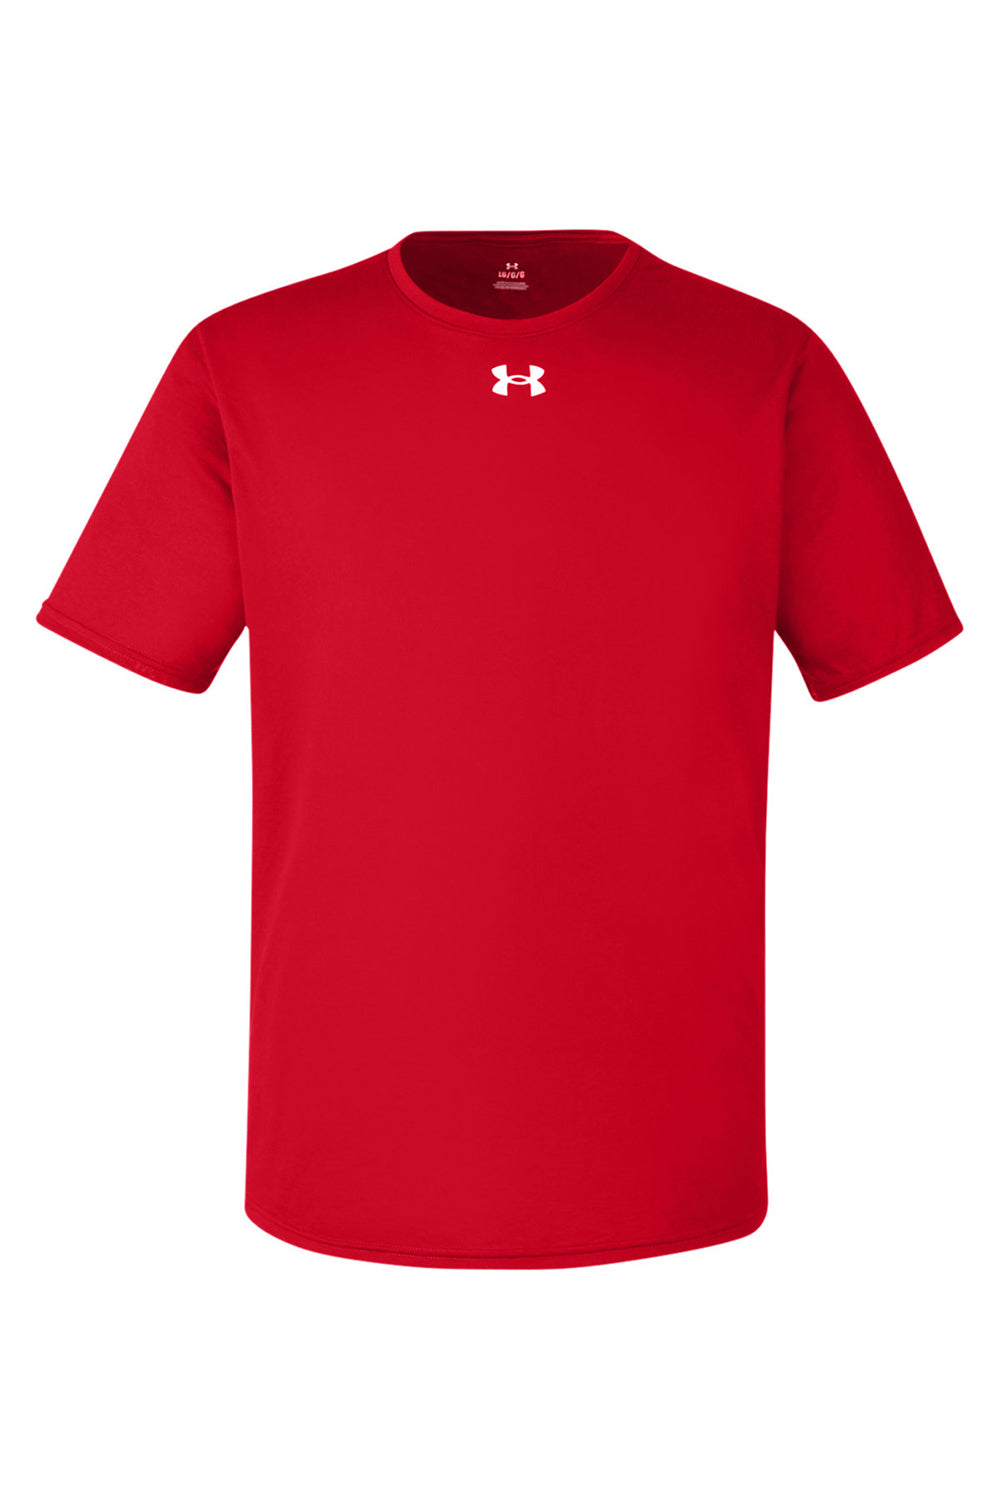 Under Armour 1376842 Mens Team Tech Moisture Wicking Short Sleeve Crewneck T-Shirt Red Flat Front